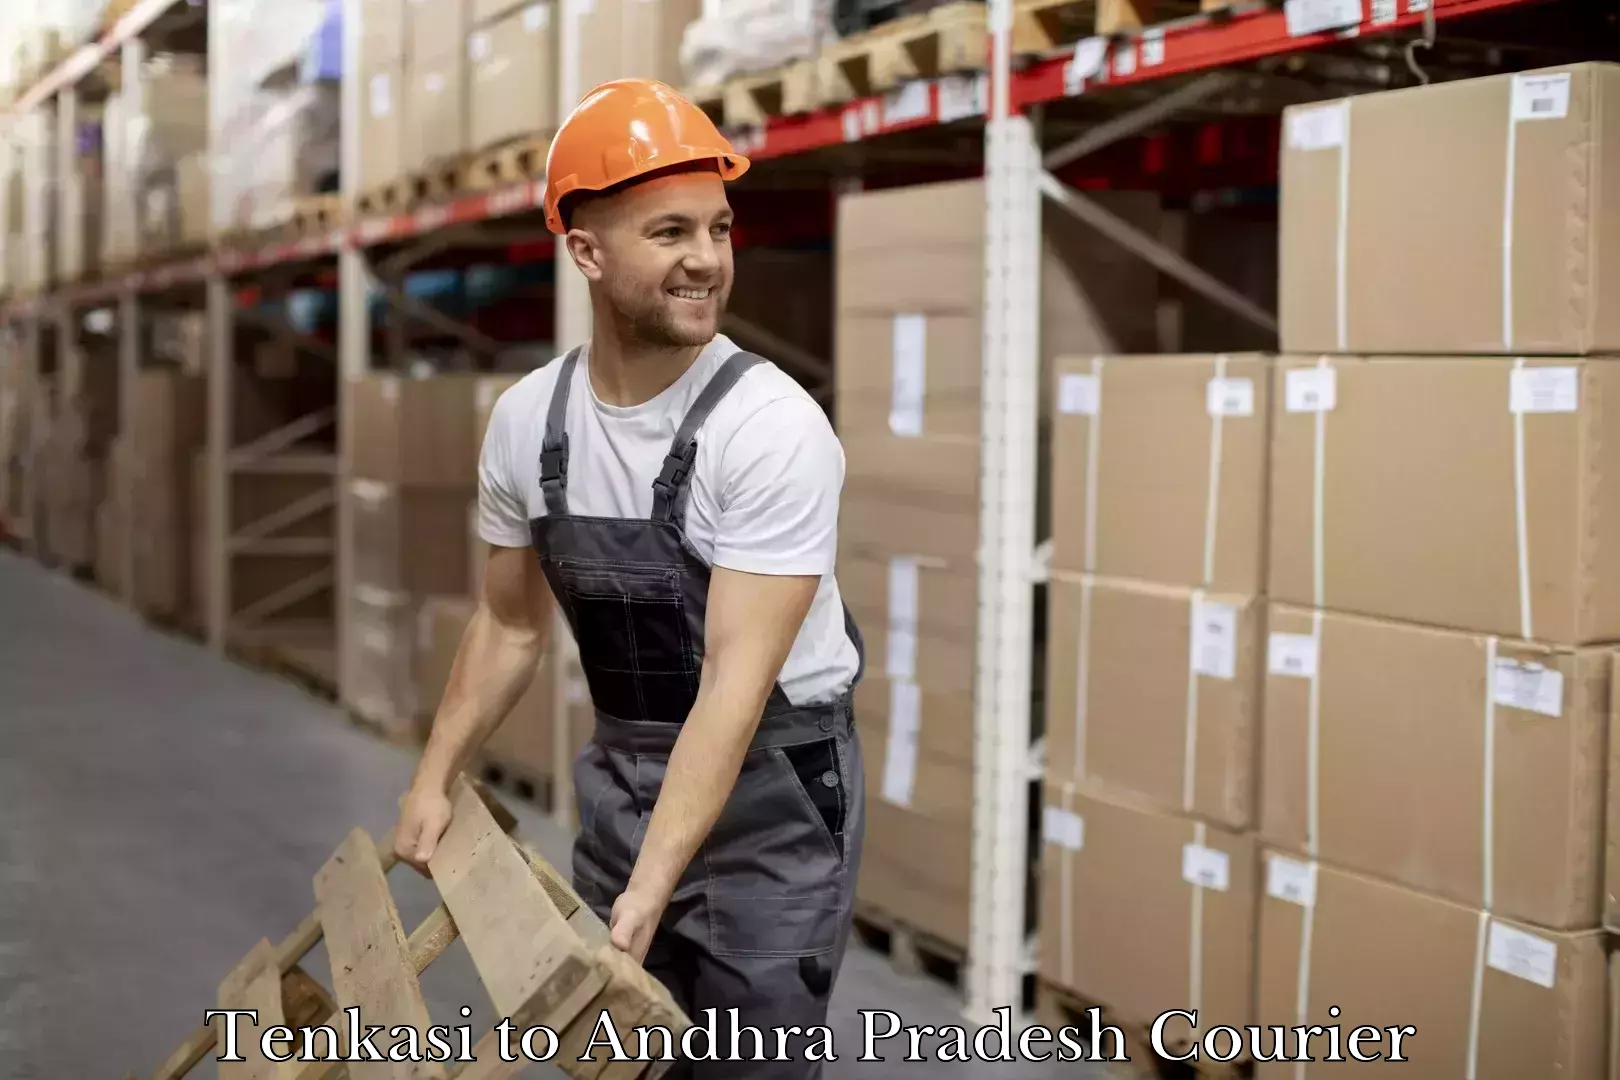 Professional courier handling Tenkasi to Andhra Pradesh